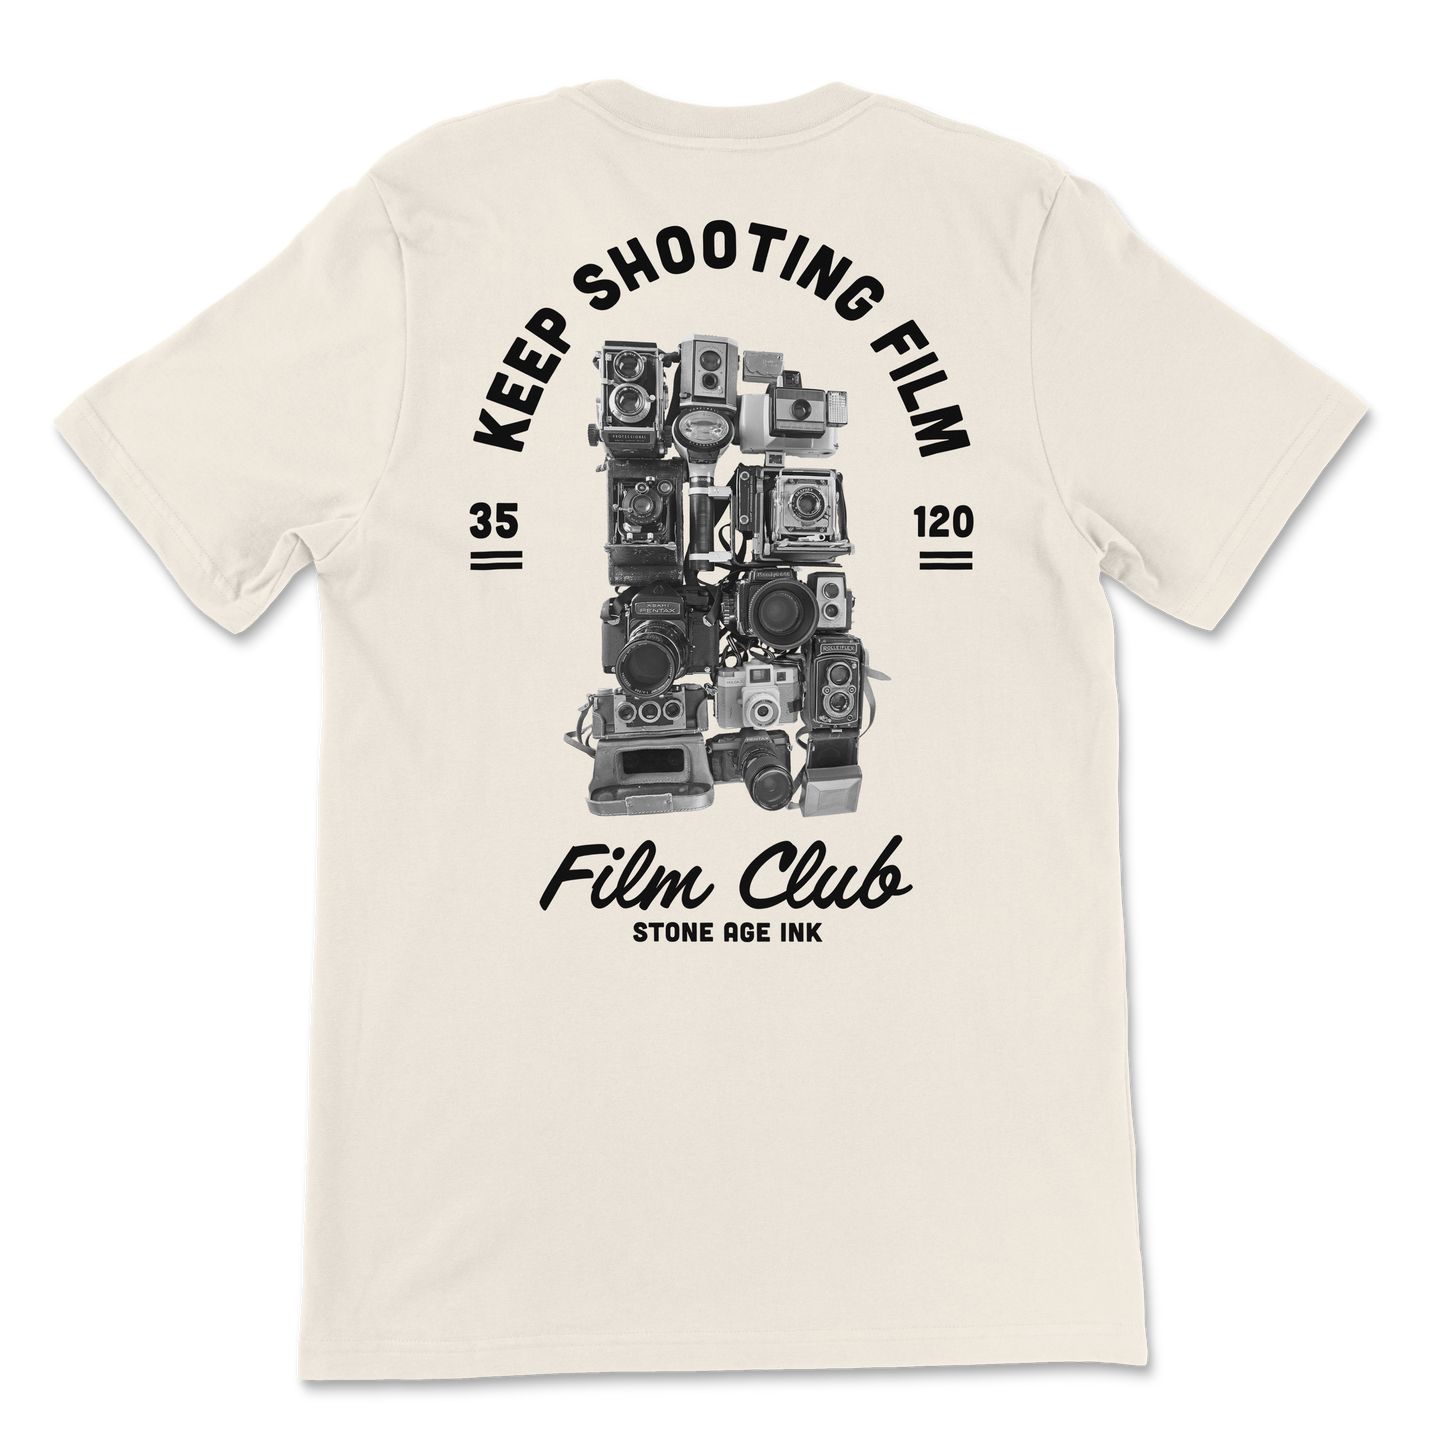 Film Club T-shirt